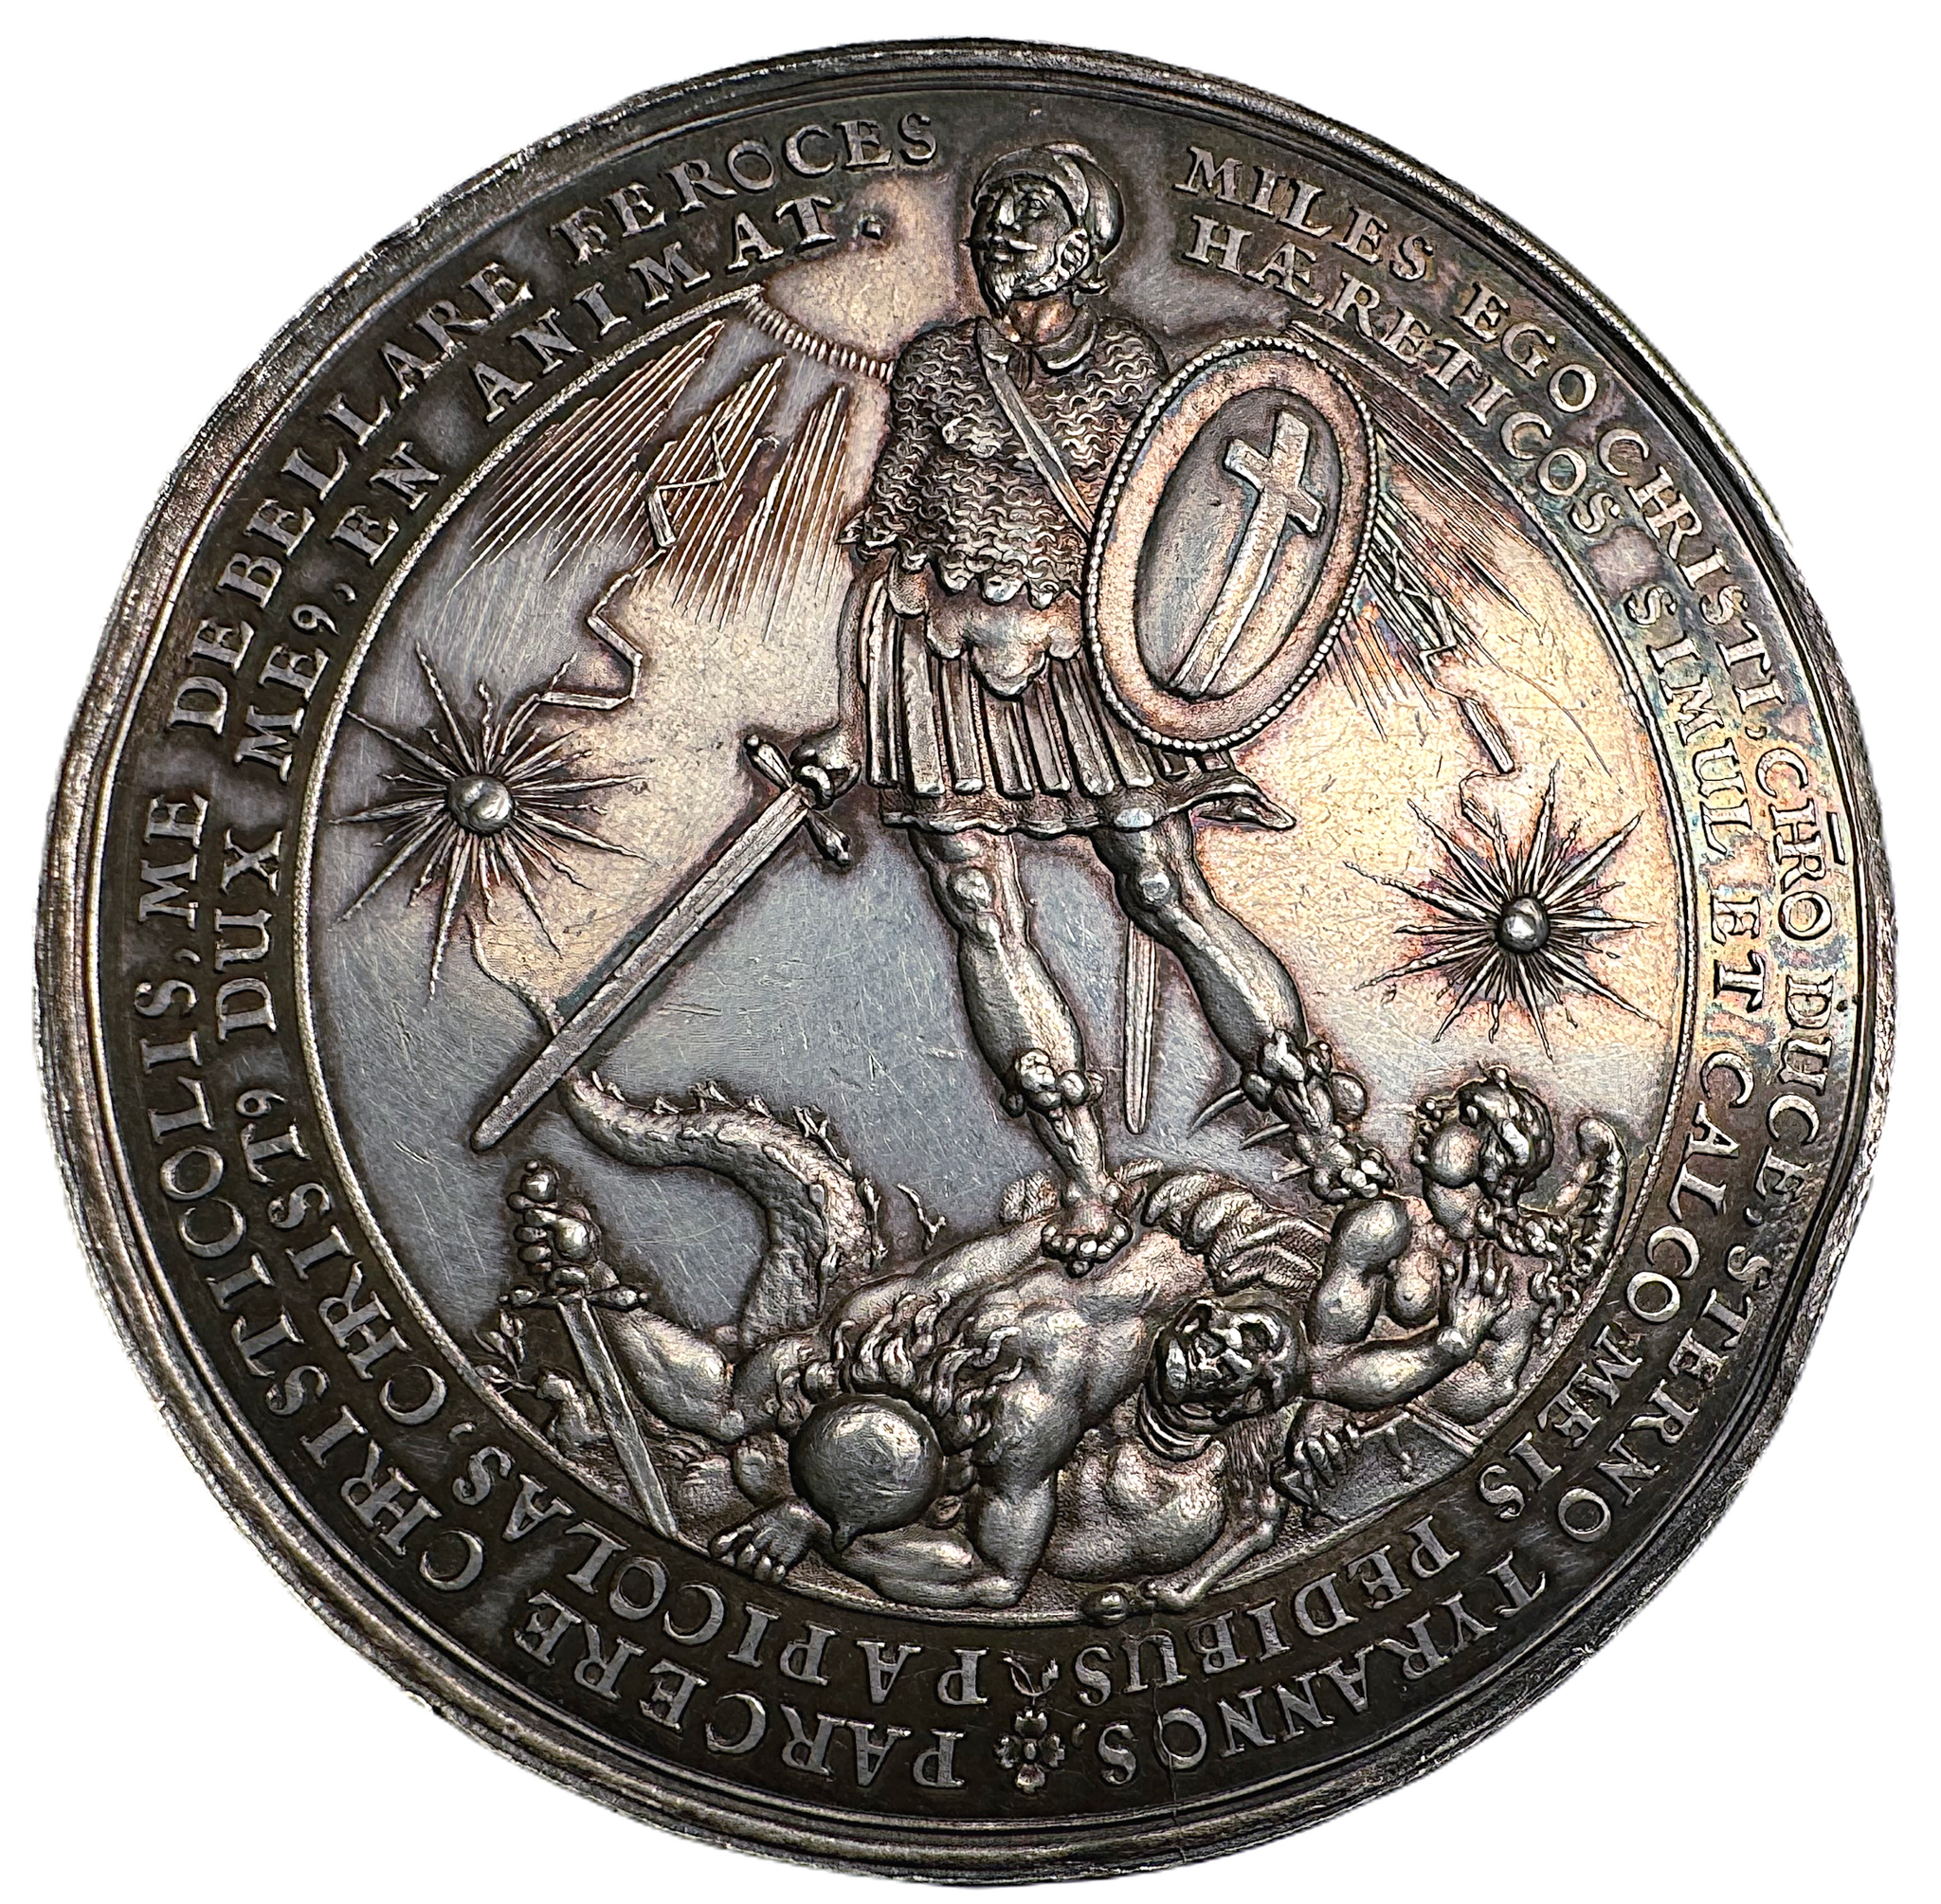 Gustav II Adolf - Segern vid Breitenfeldt 1631 och de tyska protestandernas glädjebetygelser av Sebastian Dattler - Ett mycket vackert exemplar